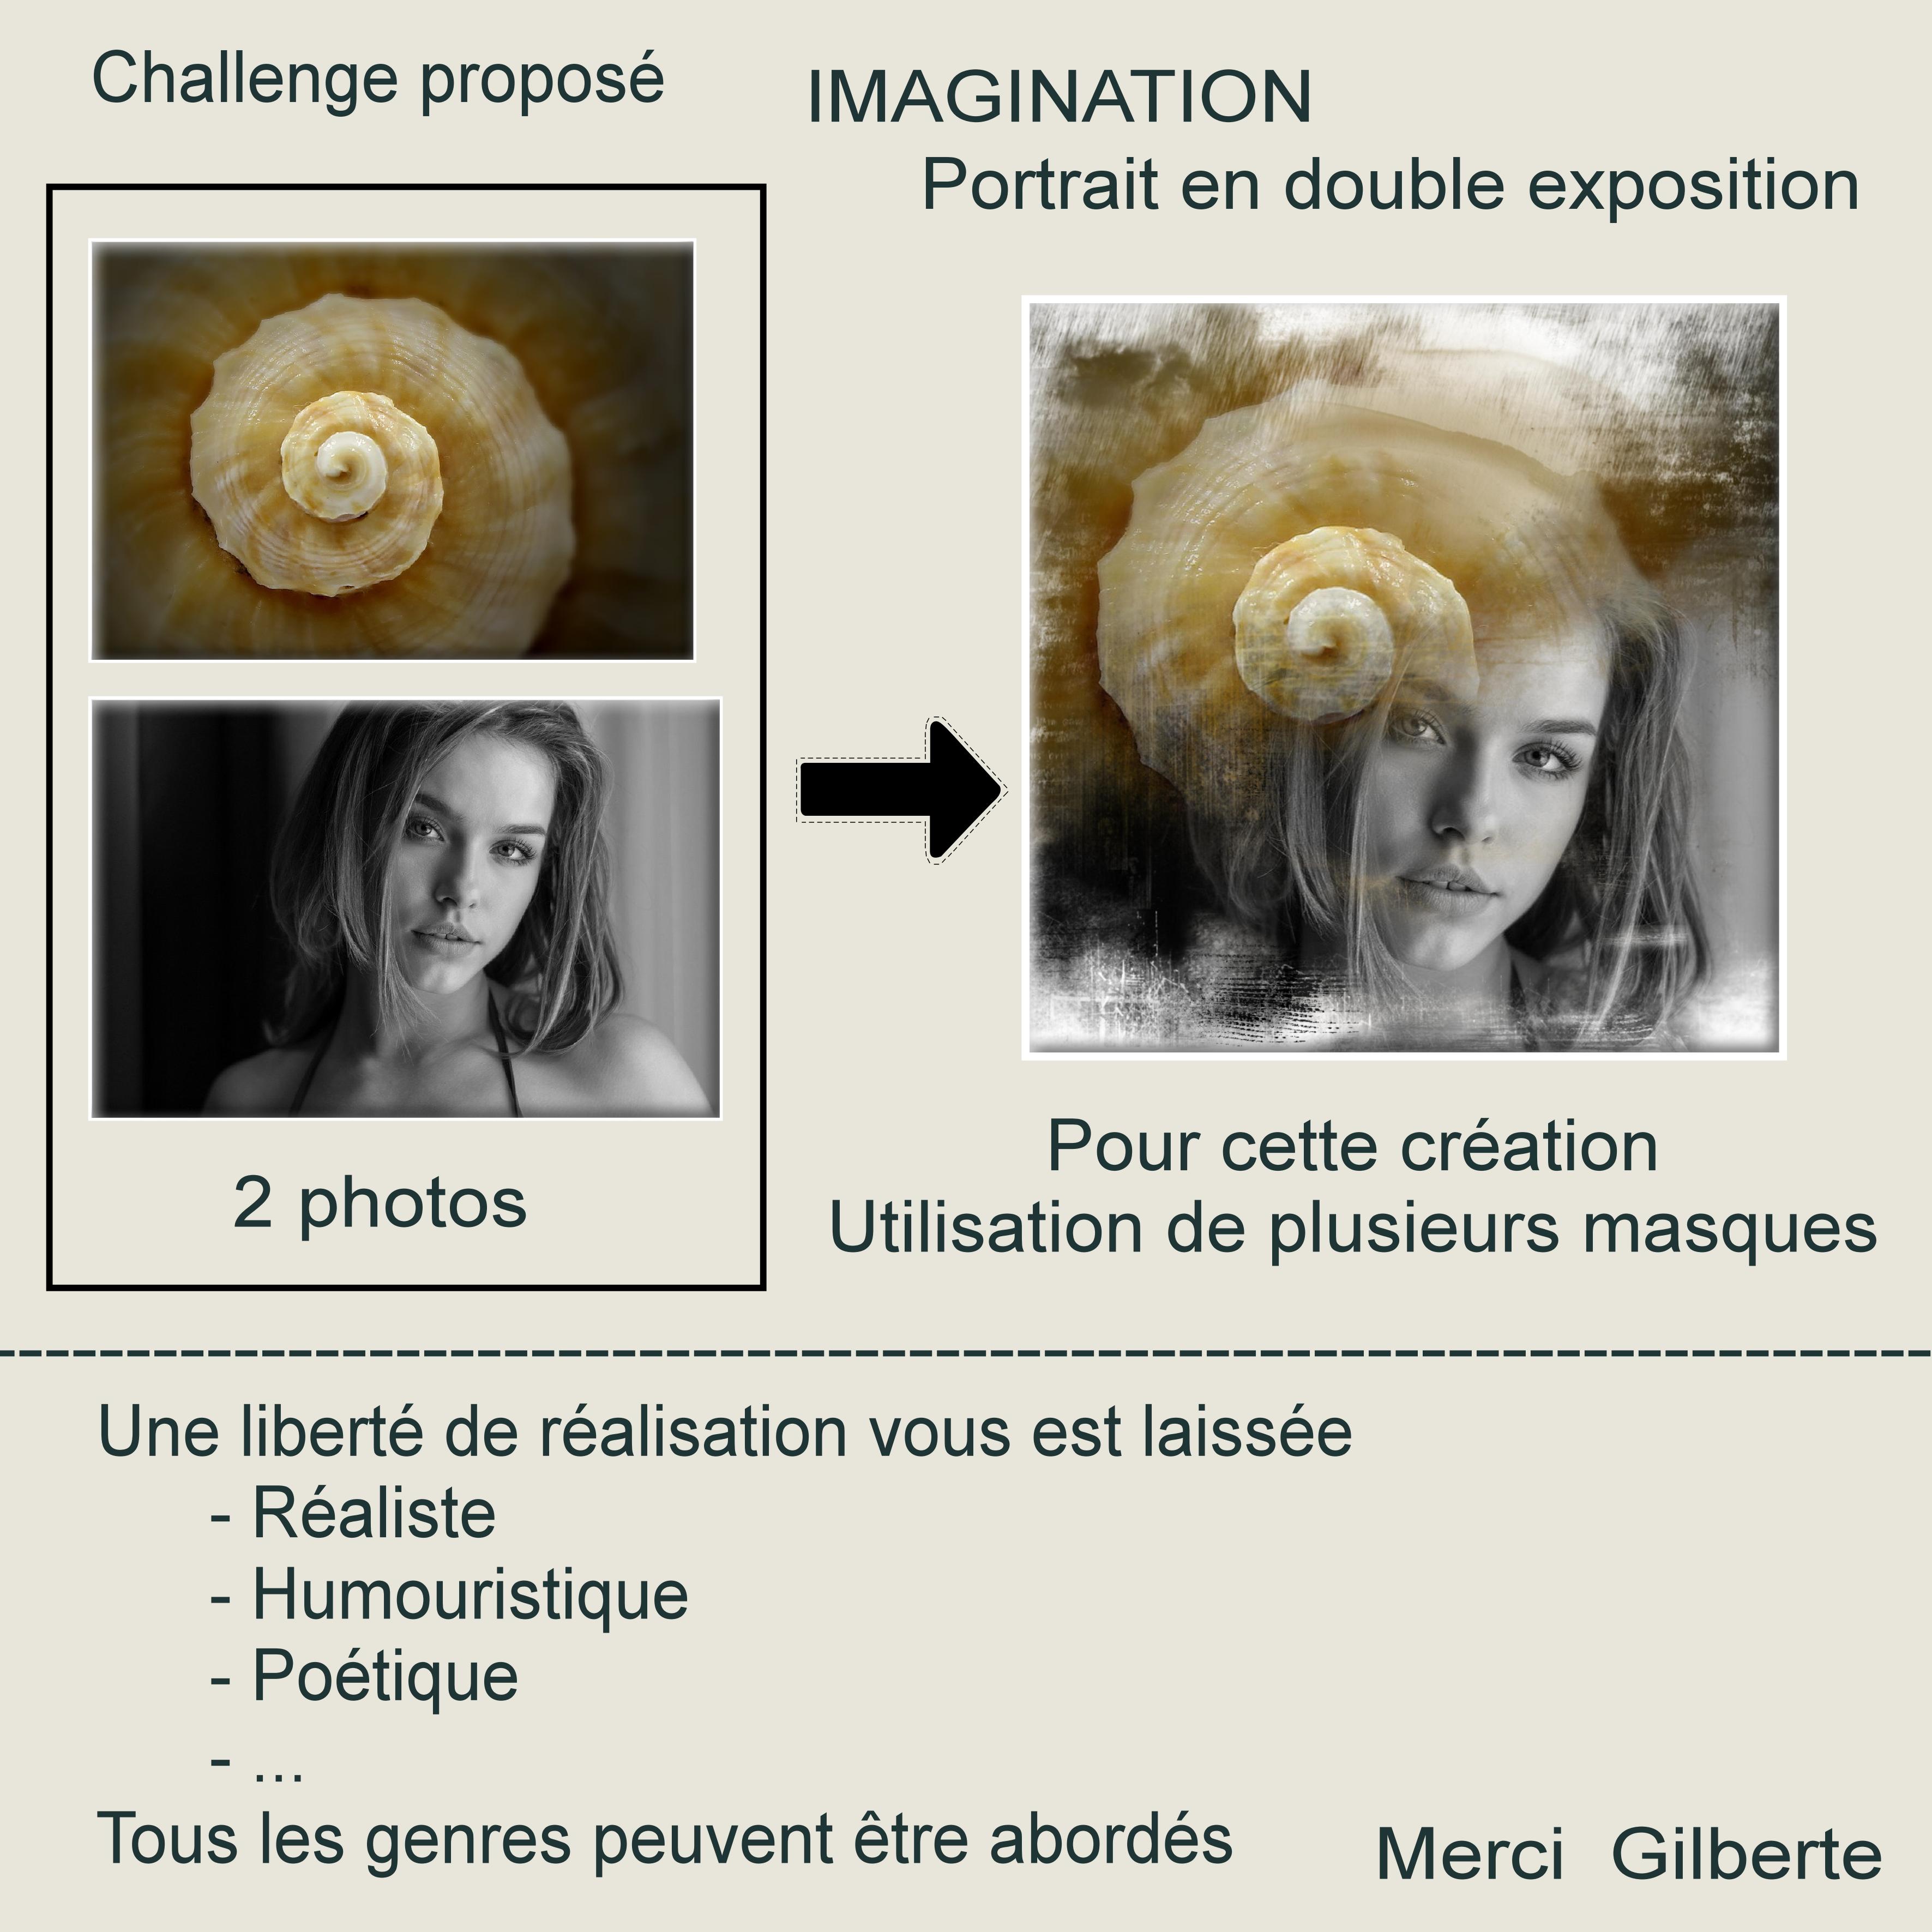 1-CHALLENGE - IMAGINATION  - PORTRAIT EN DOUBLE EXPOSITION